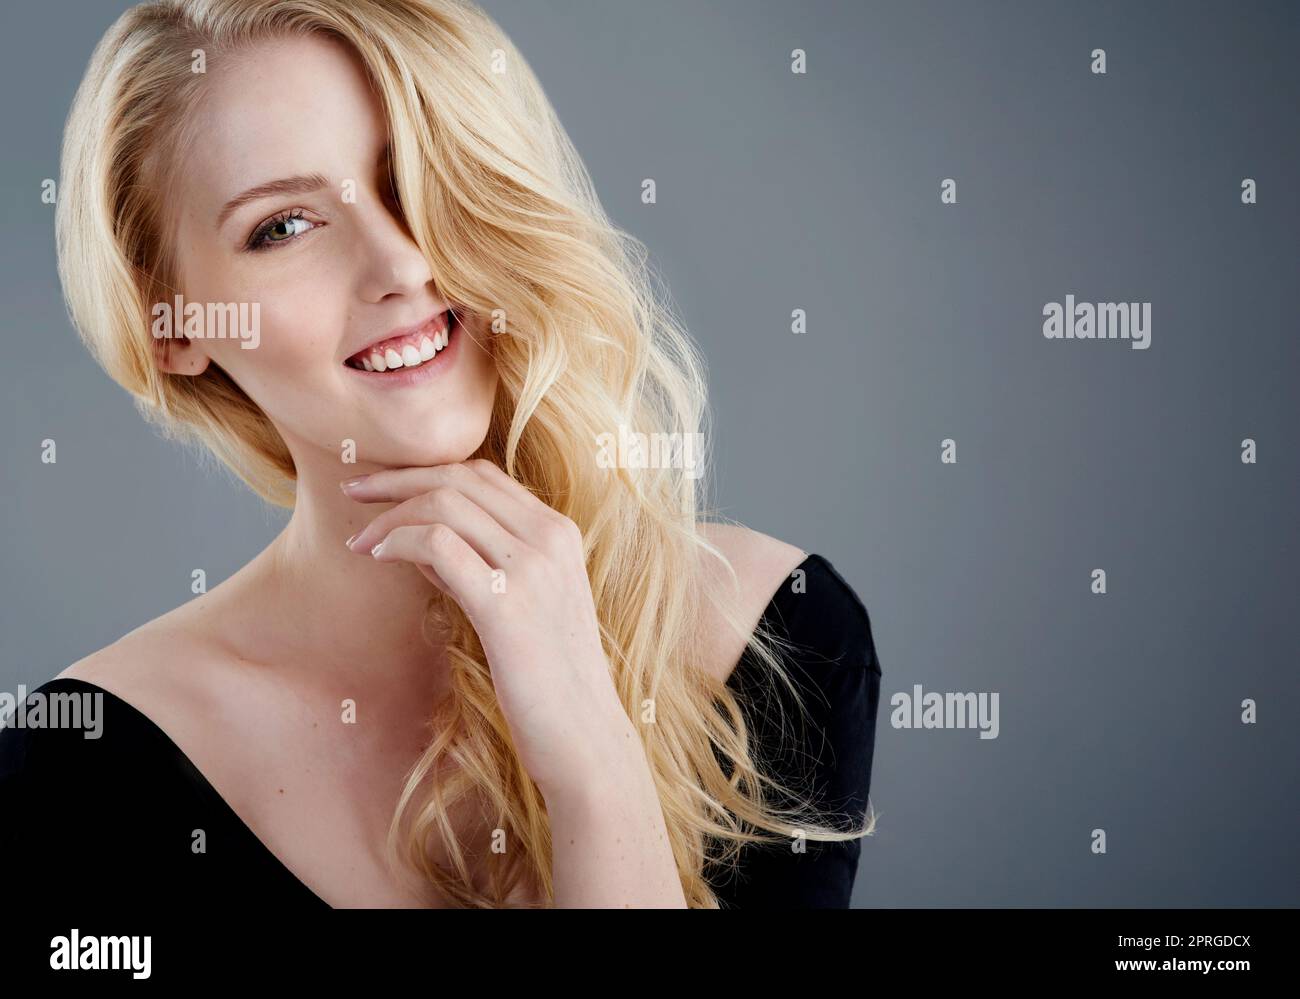 Des cheveux magnifiques et un grand sourire. Studio portrait d'une jeune femme attrayante avec de beaux cheveux blond longs posant sur un fond gris. Banque D'Images